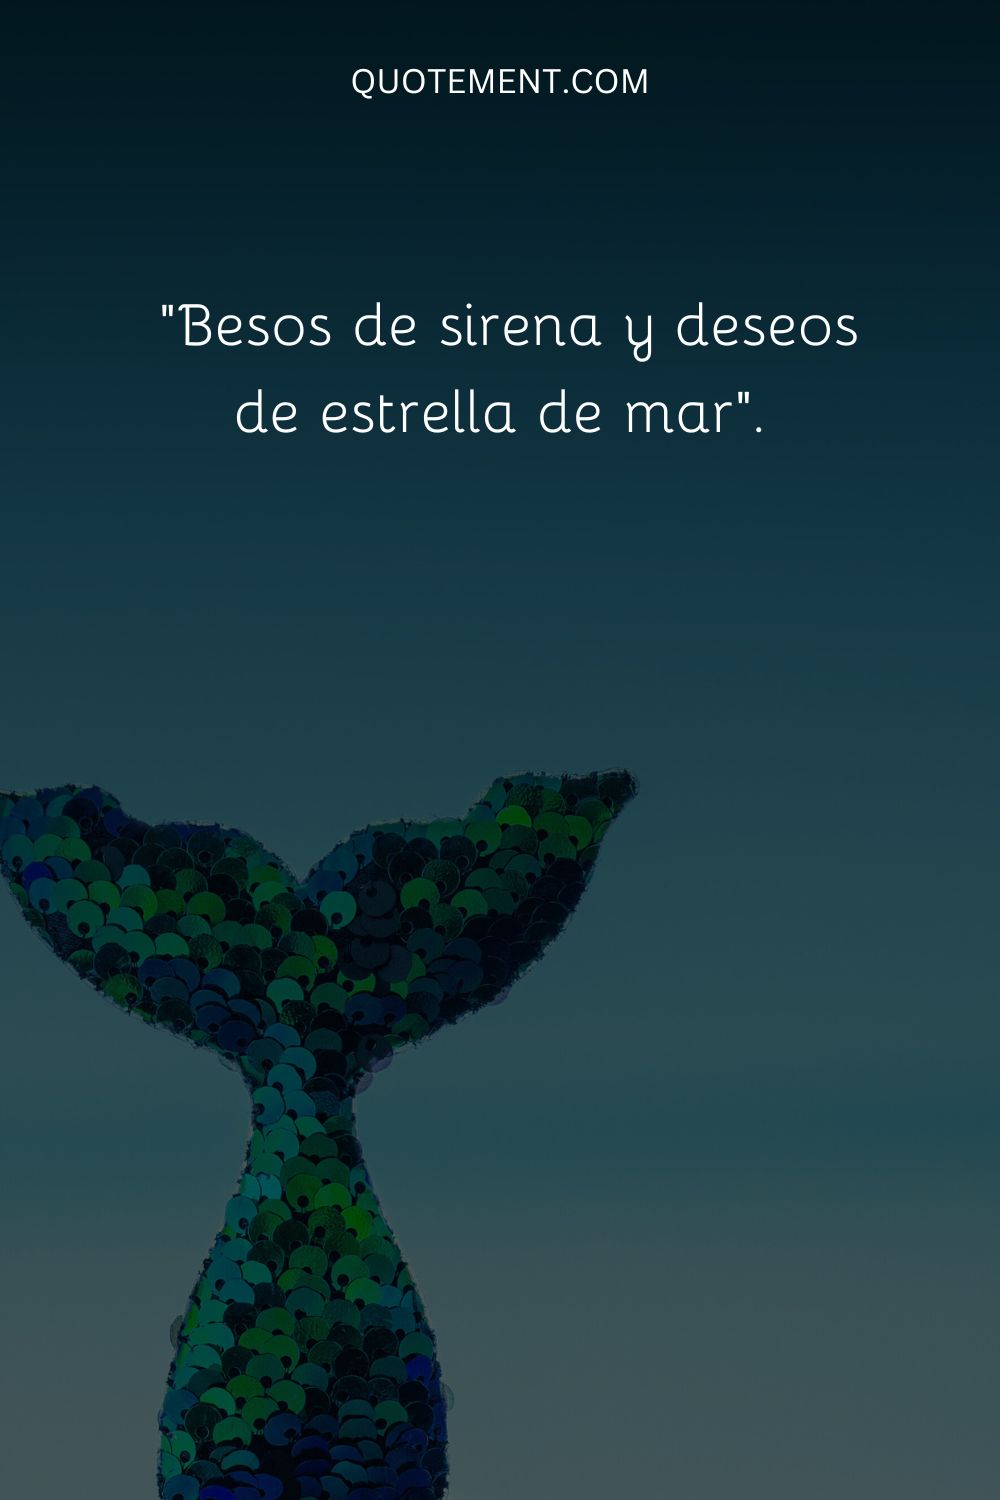 "Besos de sirena y deseos de estrella de mar".